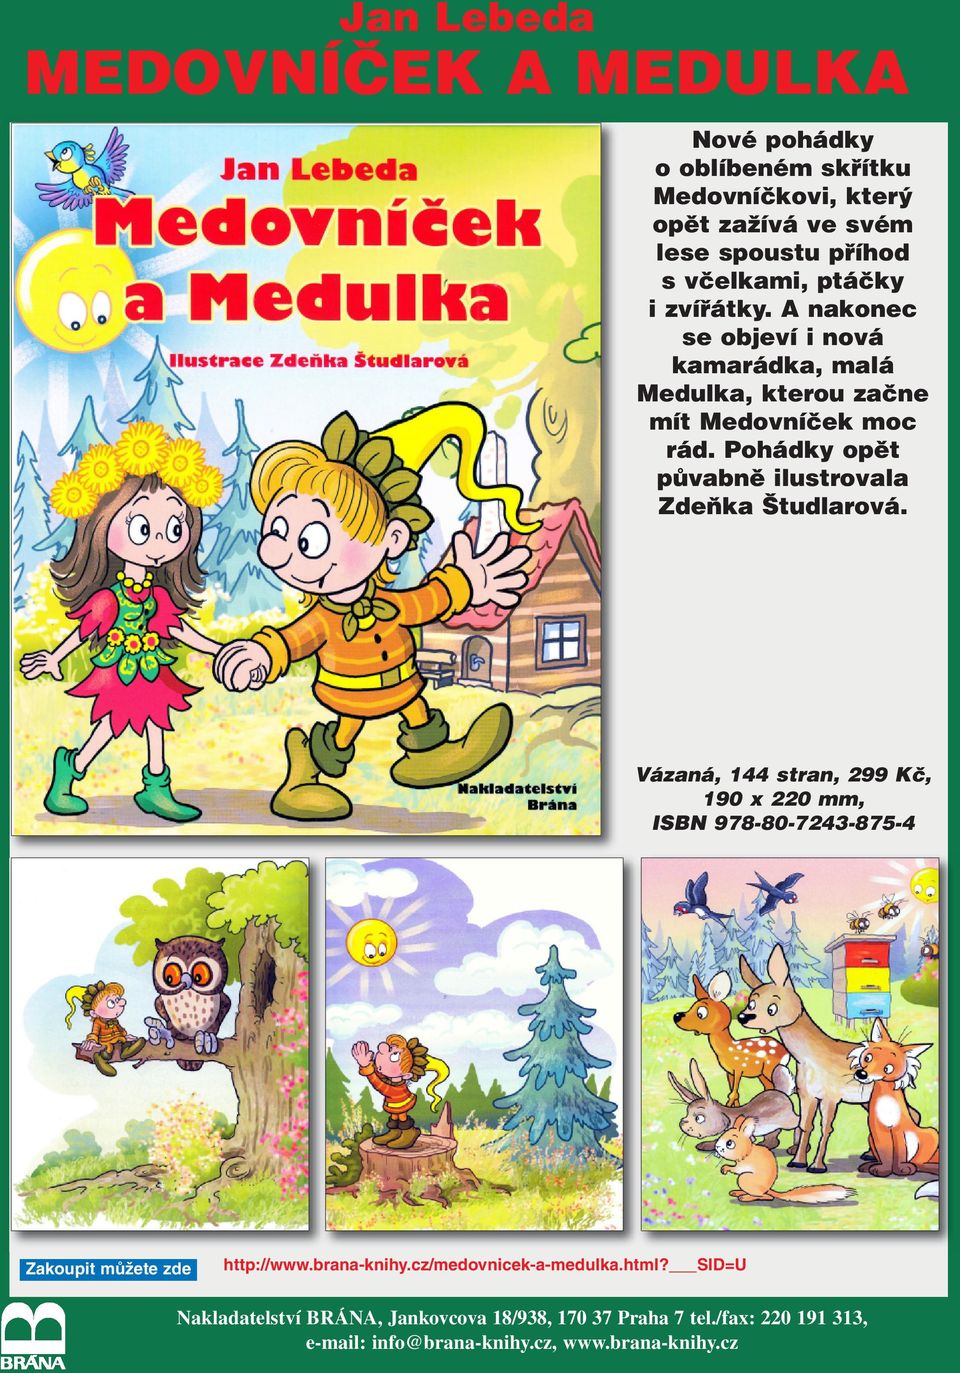 Pohádky opět půvabně ilustrovala Zdeňka Študlarová. Vázaná, 144 stran, 299 Kč, 190 x 220 mm, ISBN 978-80-7243-875-4 http://www.